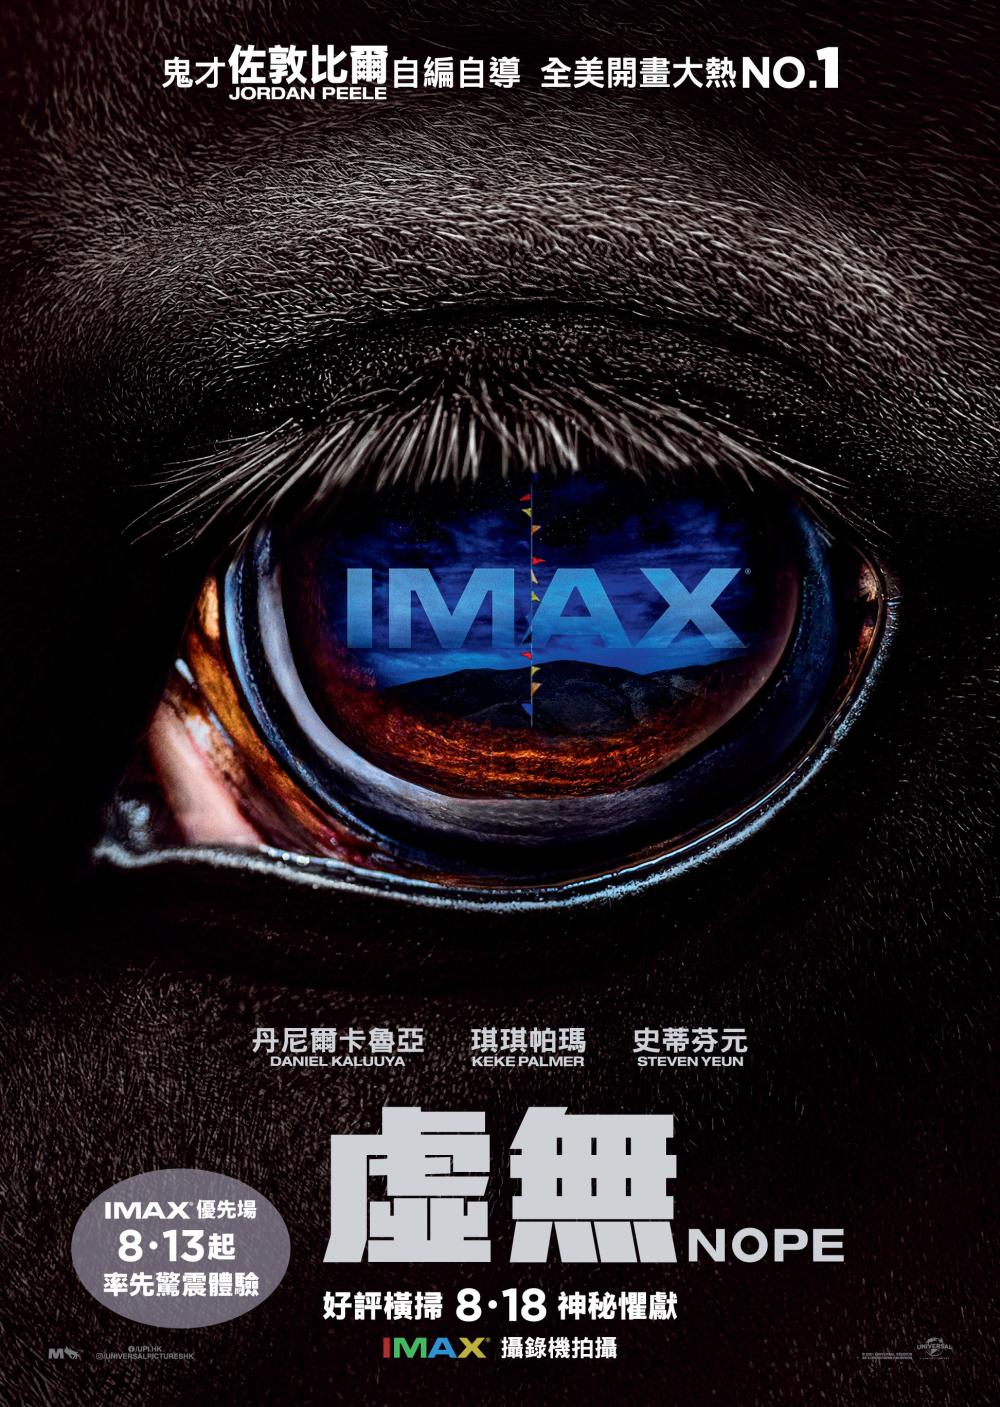 Hong Kong IMAX Poster